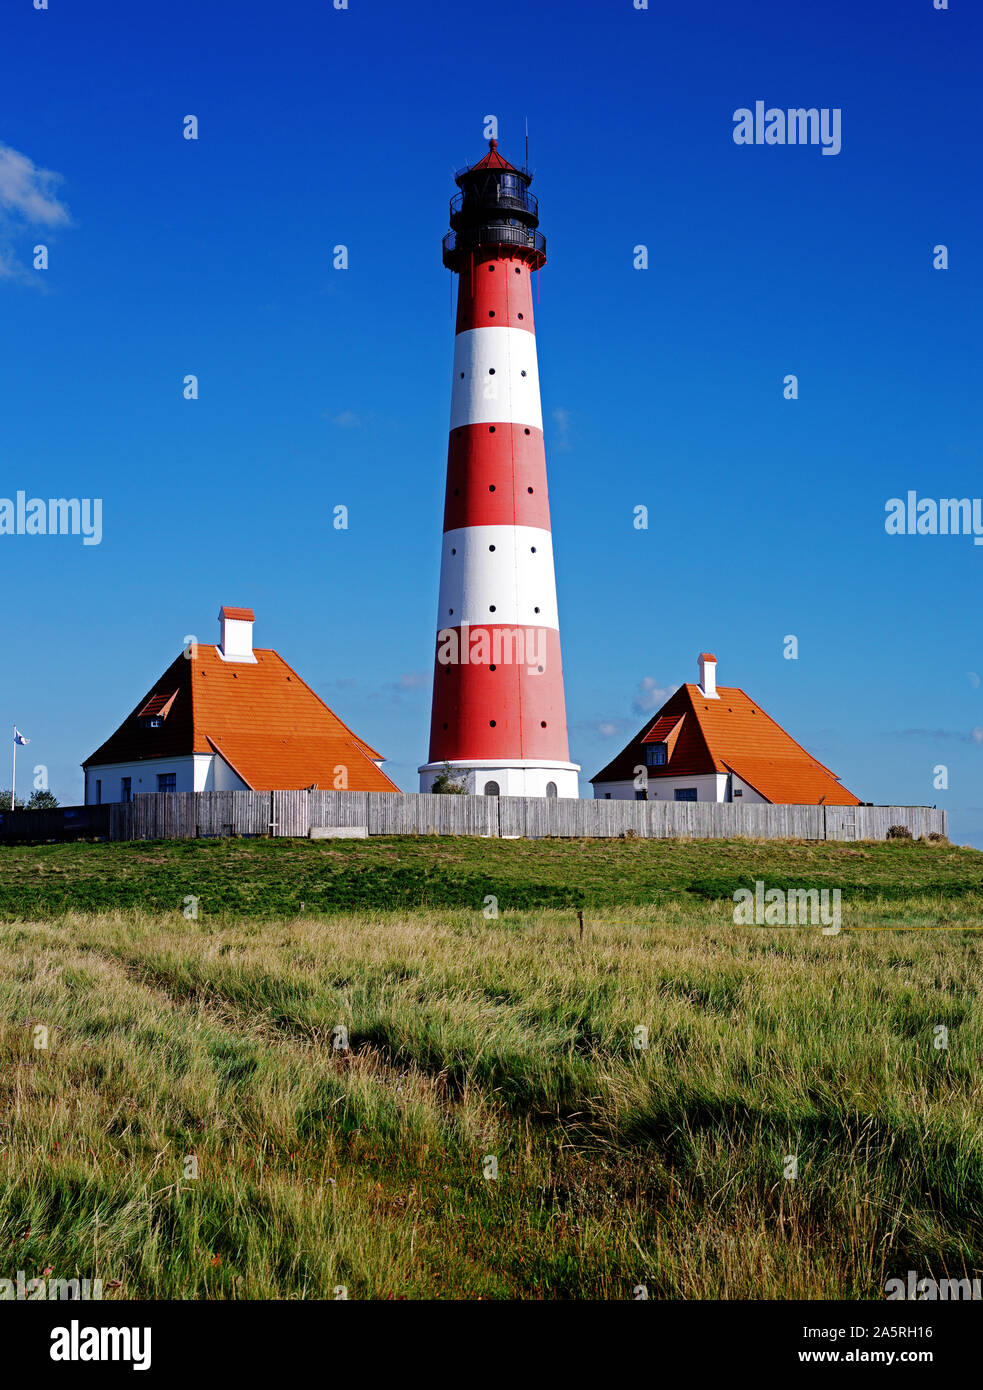 Leuchtturm von Westerhever, Westerheversand, bei St. Peter Ording, Schleswig-Holstein, Bundesrepublik Deutschland Stock Photo